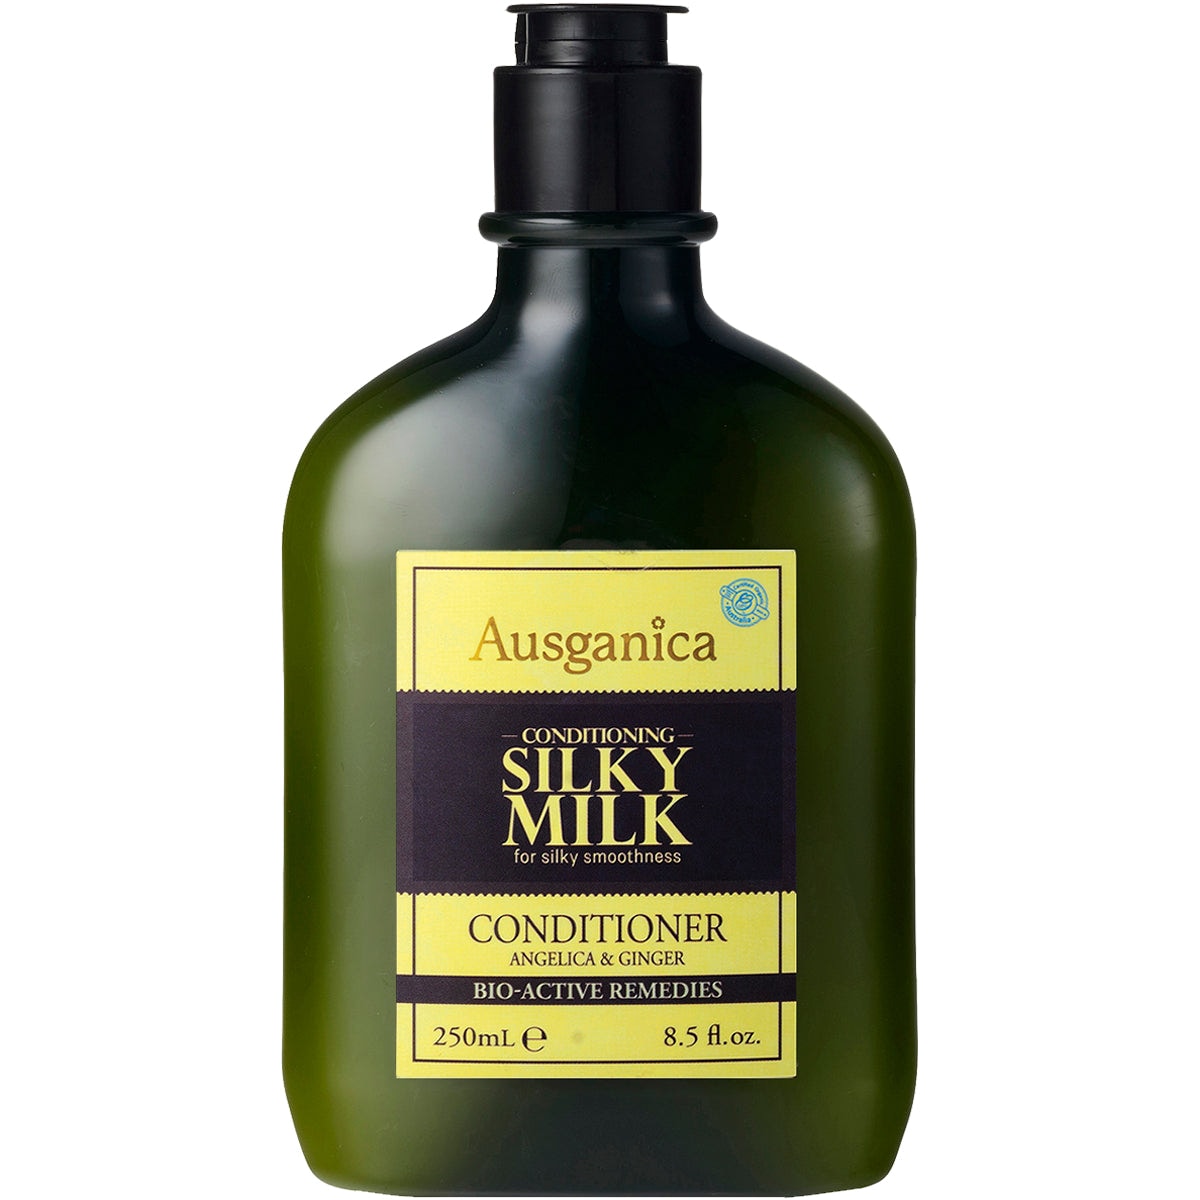 Ausganica Bio Active Remedies Silky Milk Conditioner 250ml